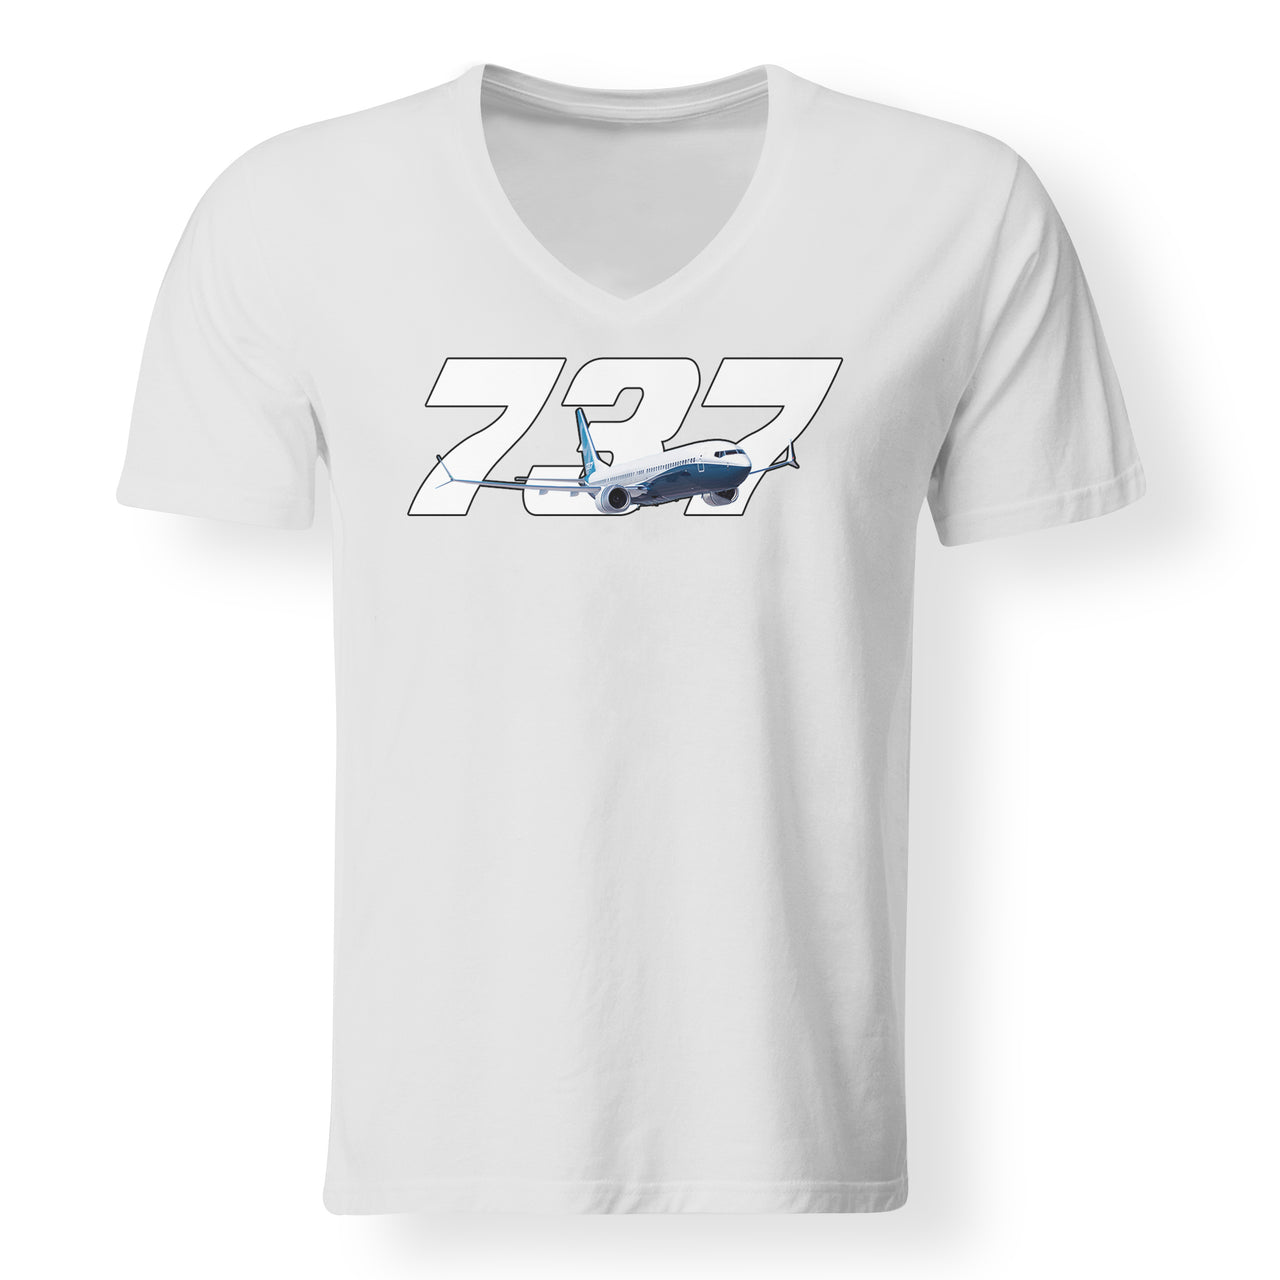 Super Boeing 737 Designed V-Neck T-Shirts